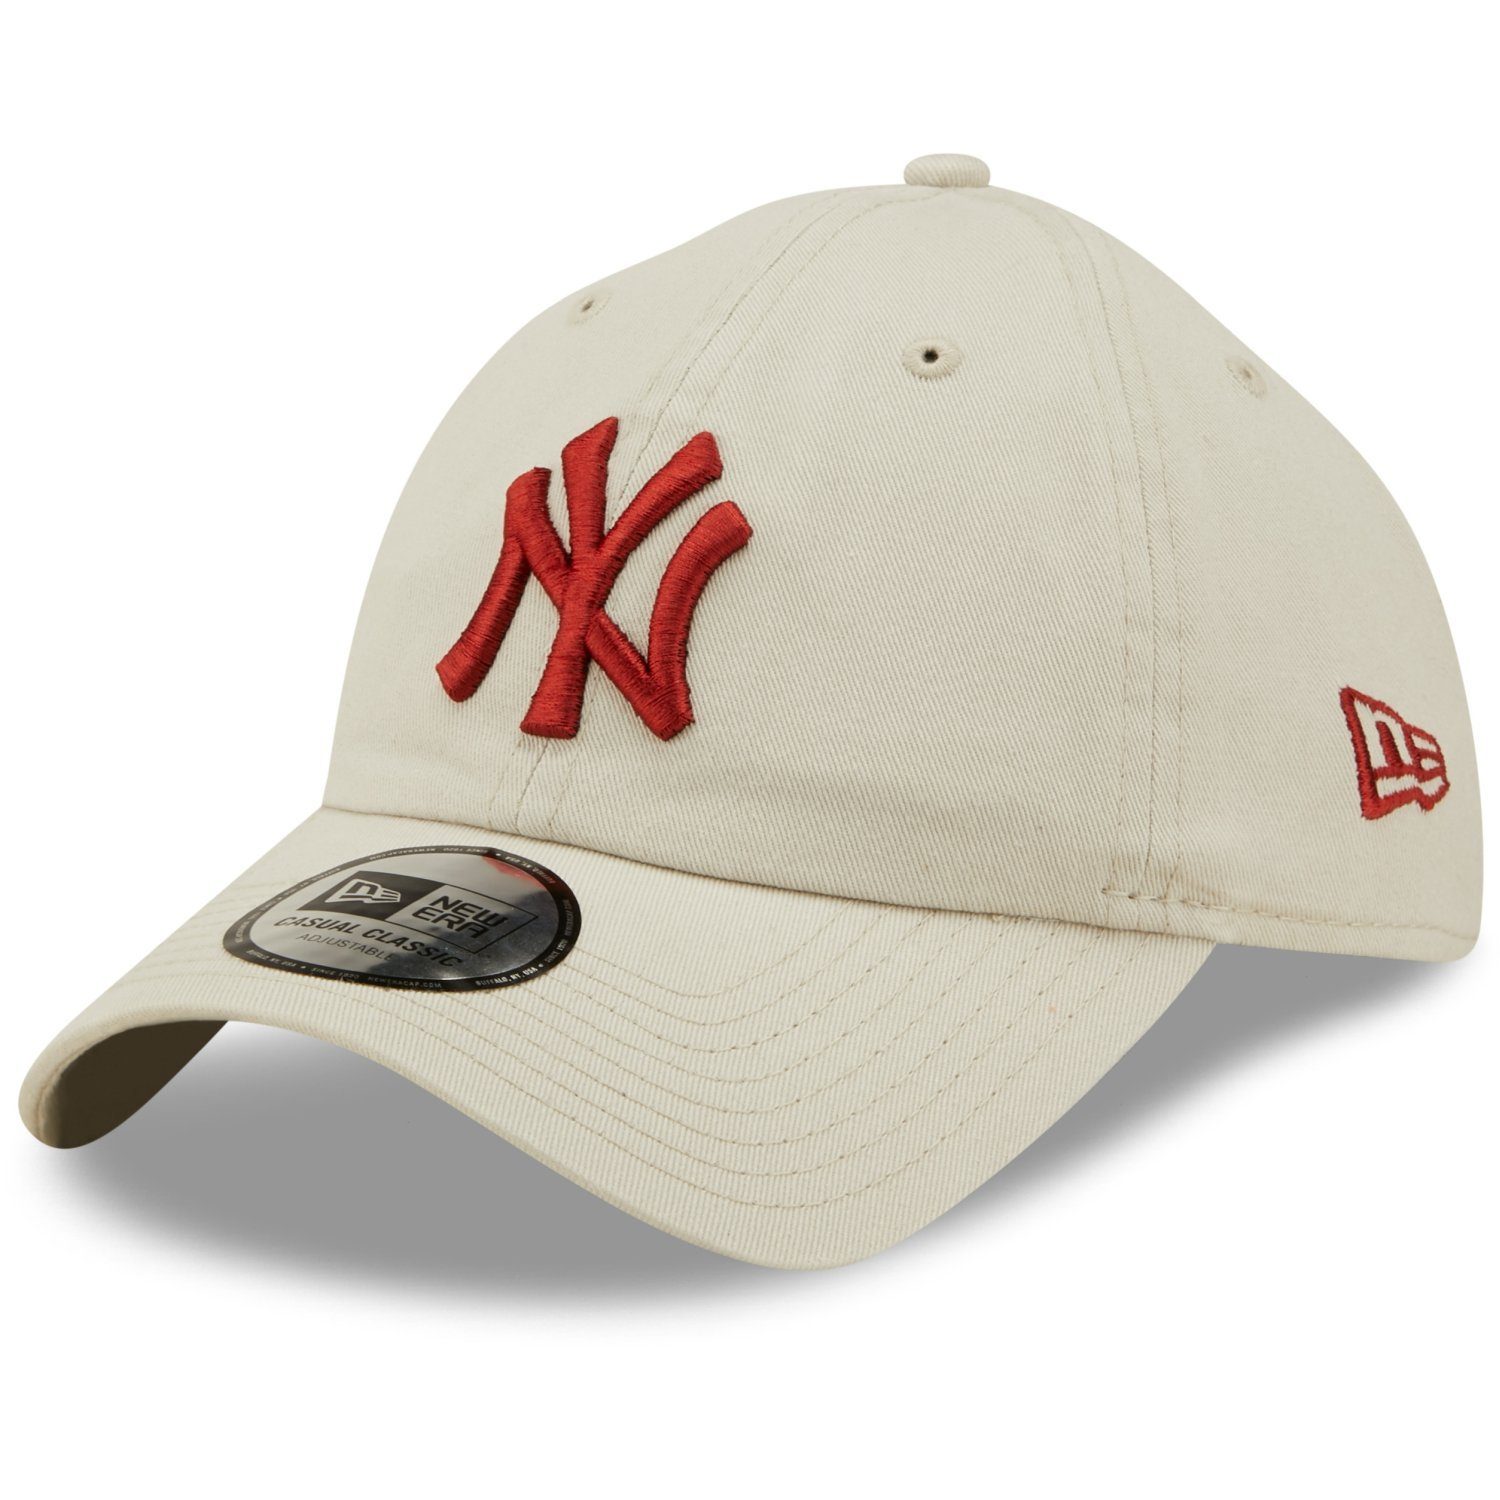 Classics York Baseball Era New New Casual Yankees Cap